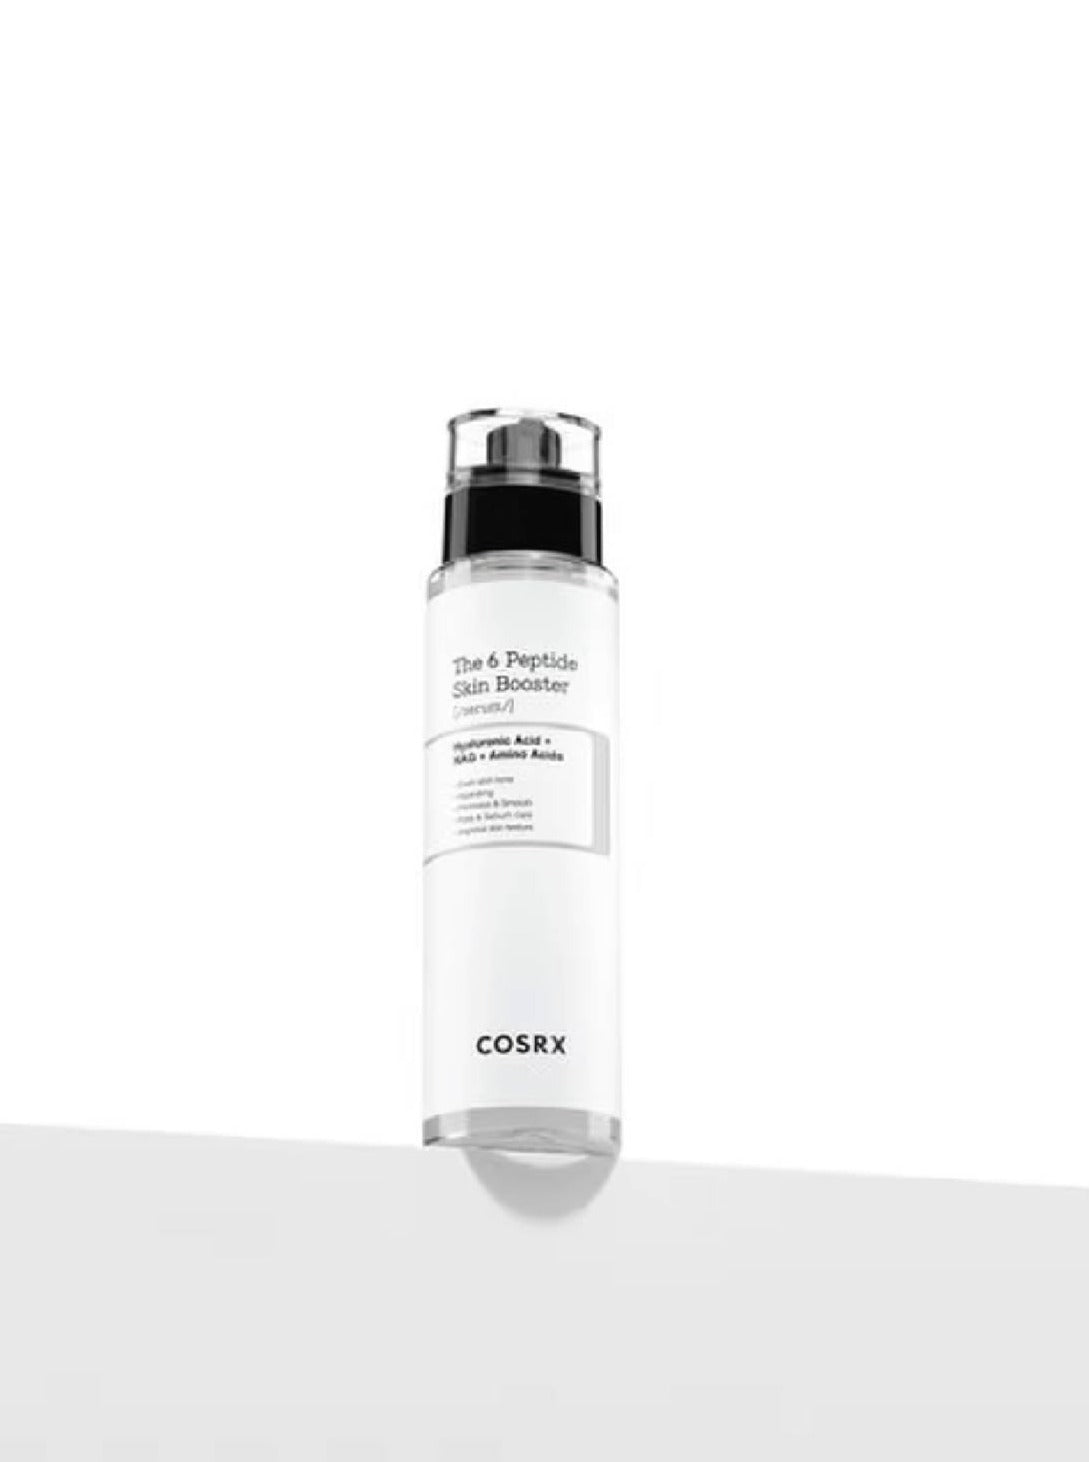 COSRX The 6 Peptide Skin Booster Serum